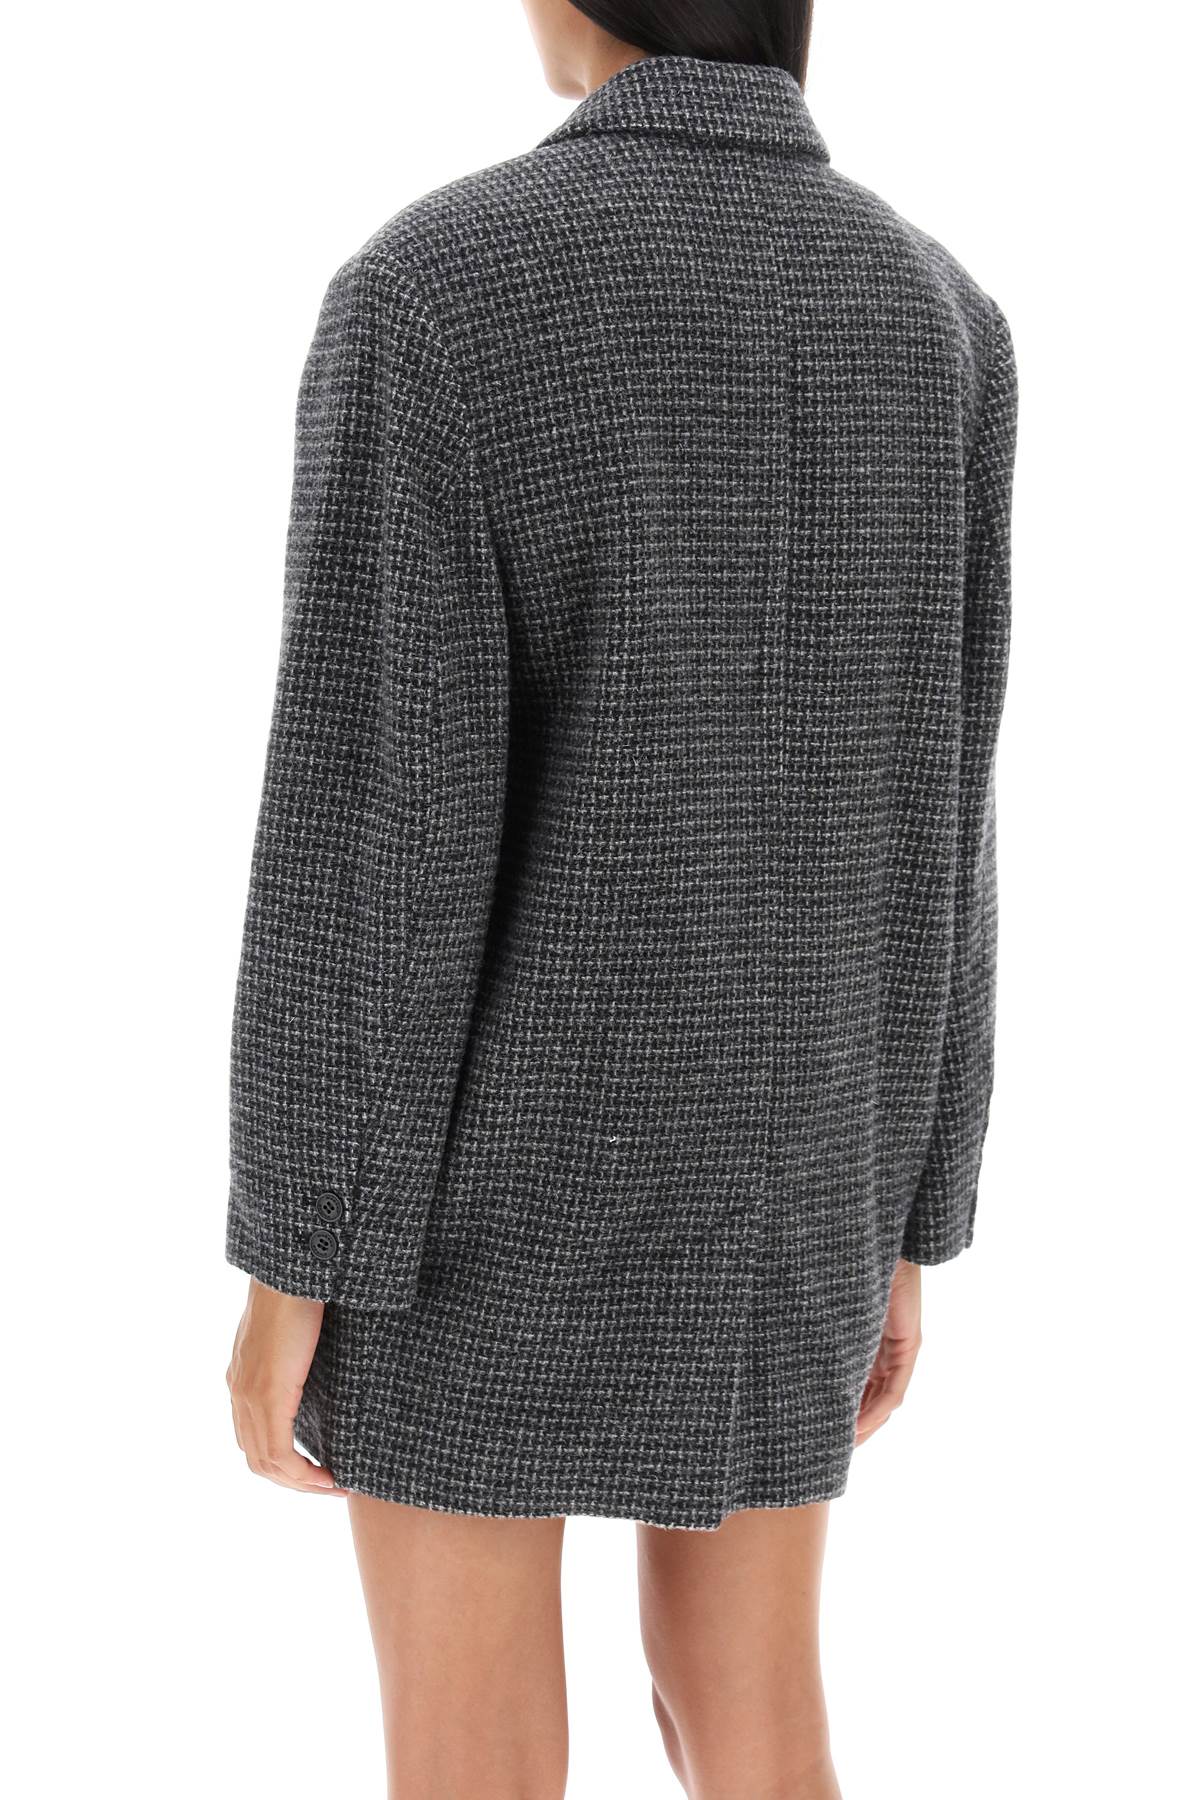 ISABEL MARANT ETOILE Grey Wool Winter Jacket for Women - Isabel Marant Cikaito FW23